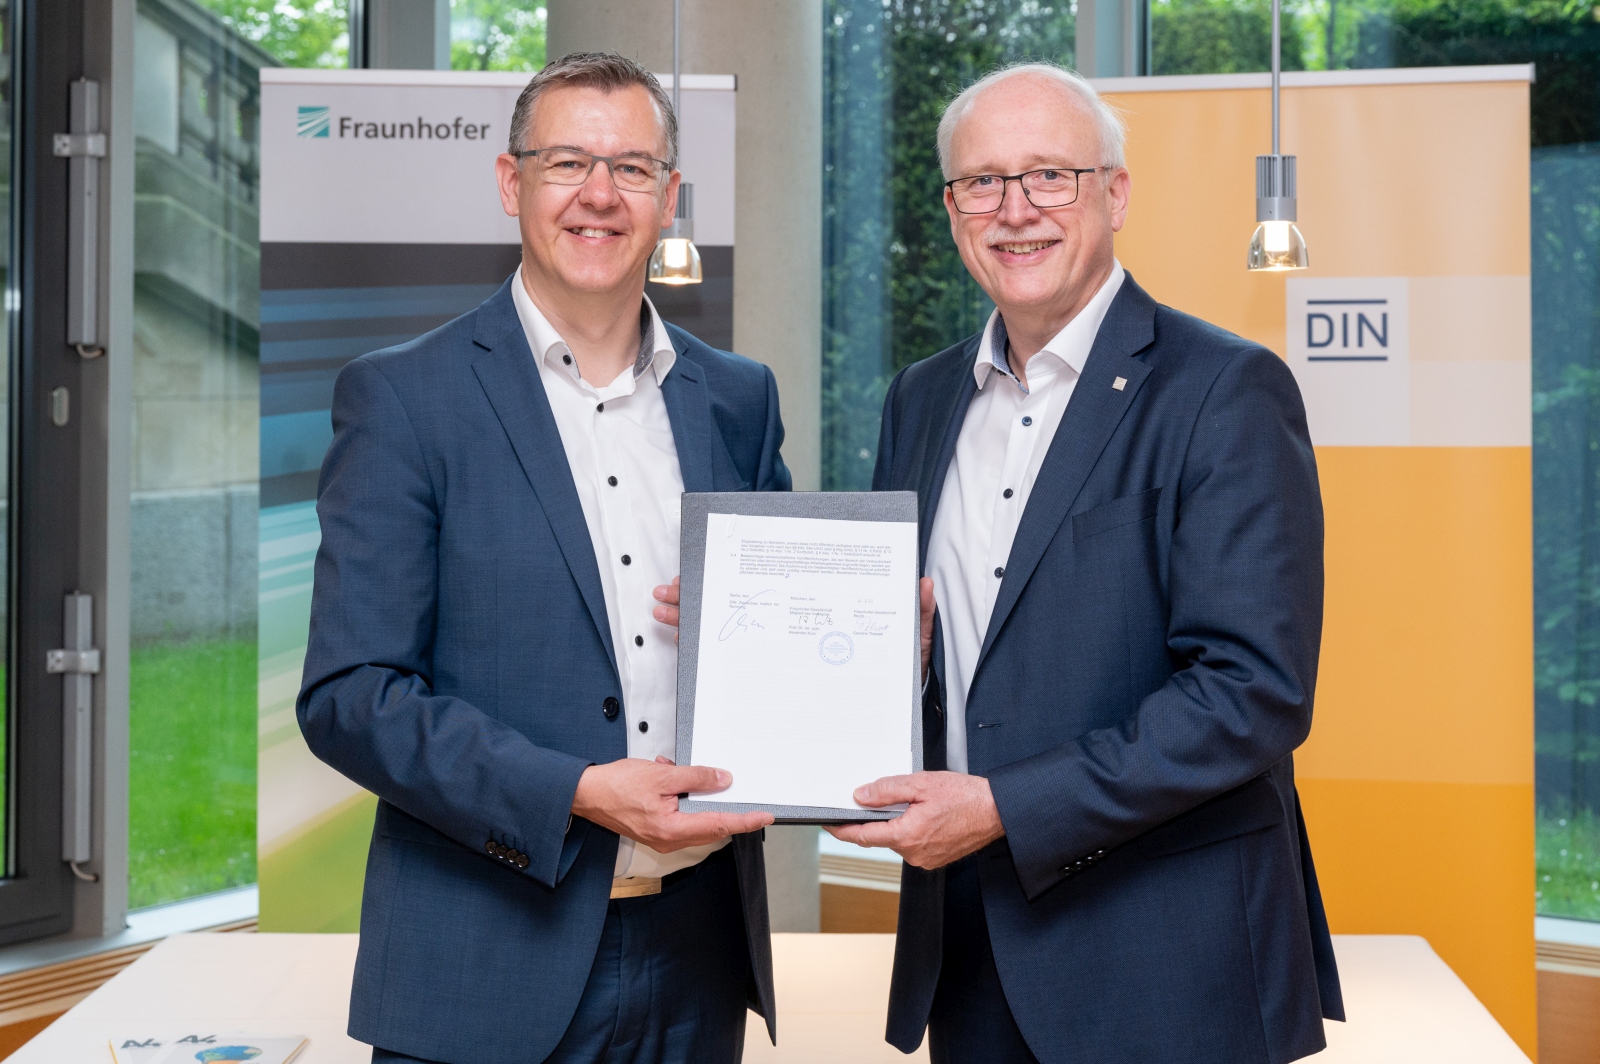 DIN und Fraunhofer-Gesellschaft unterzeichnen Kooperationsvereinbarung